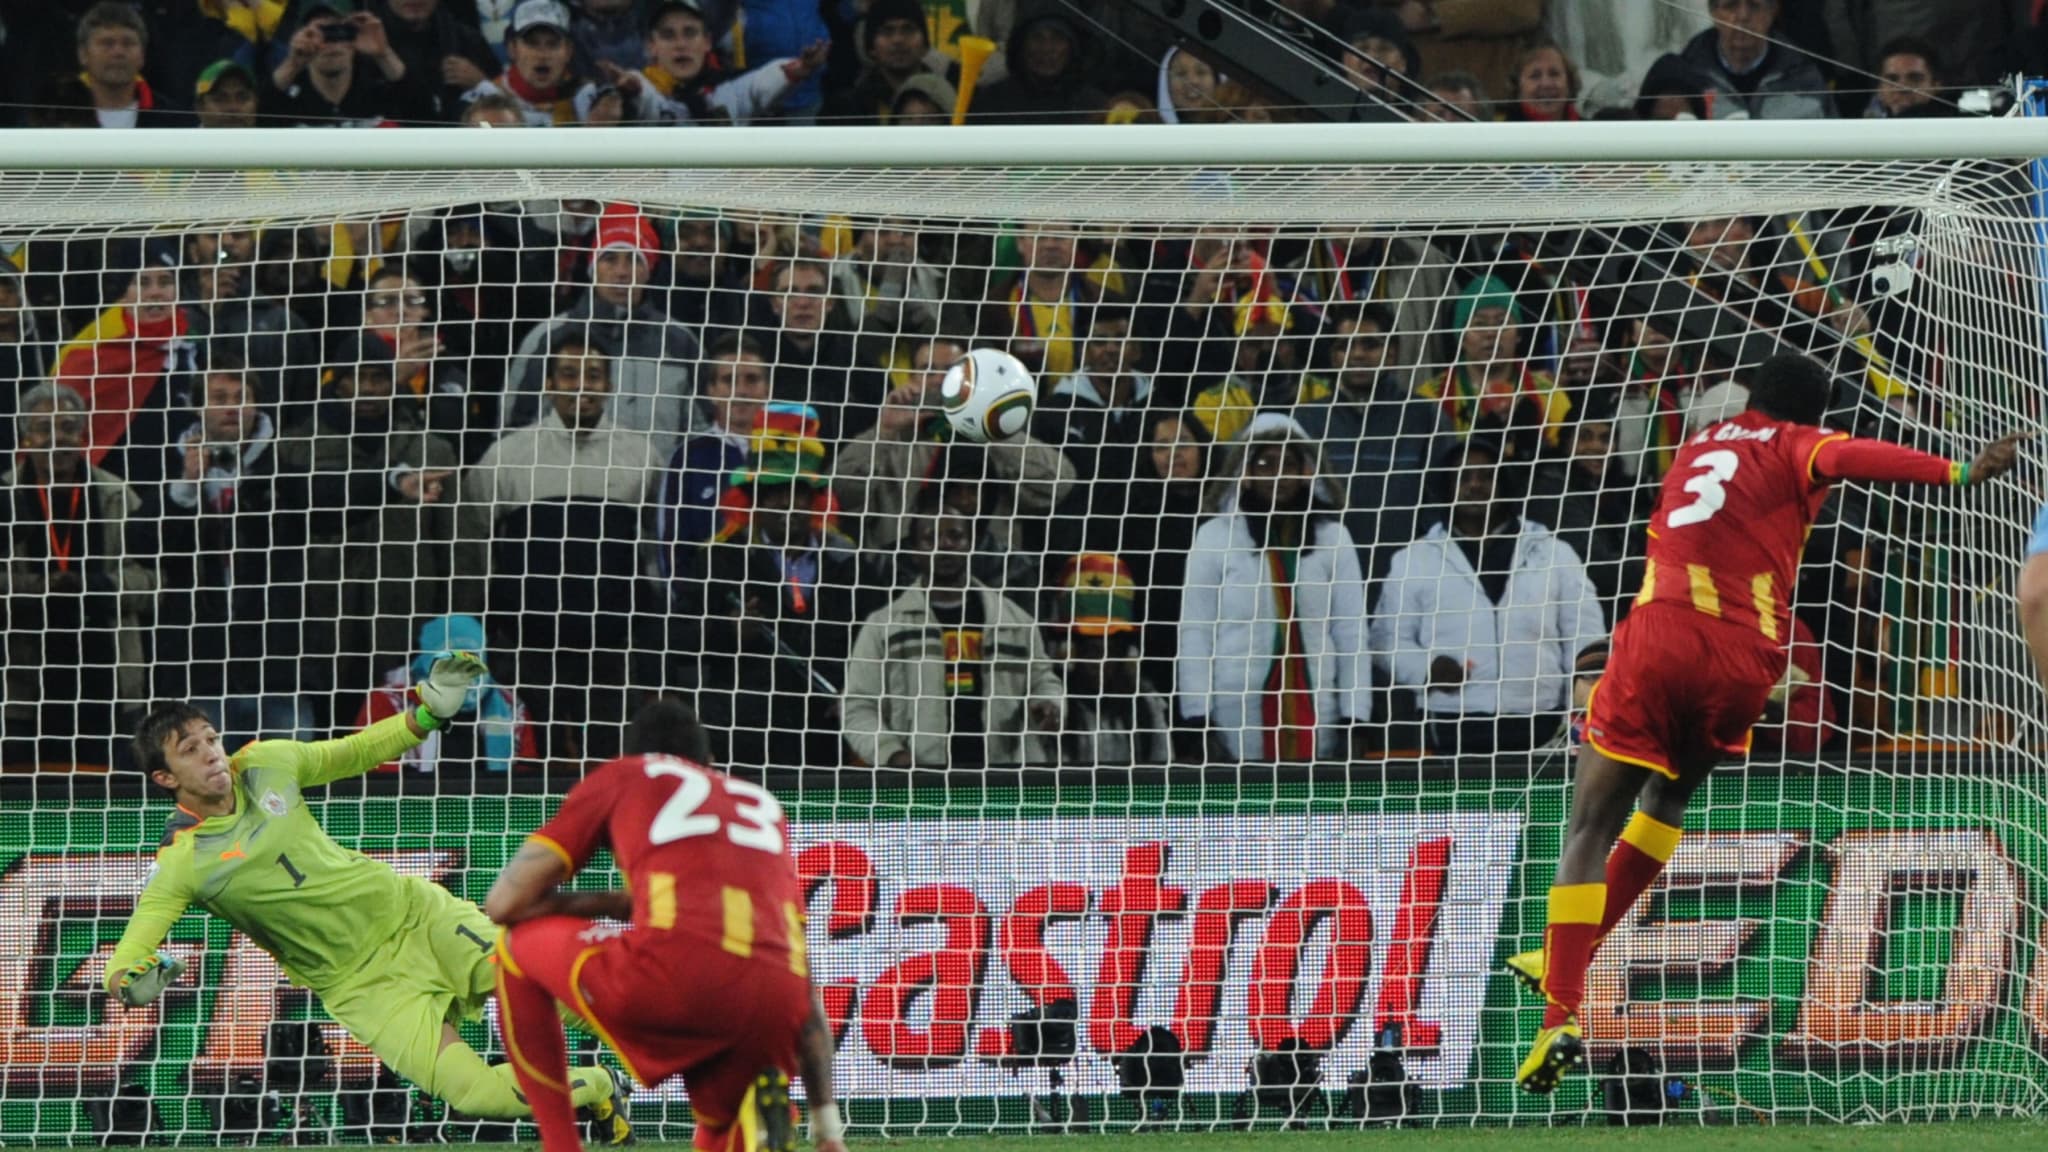 Em 2010, a Gana chegou até as quartas de final, mas foi derrotada pelo Uruguai nos pênaltis. O confronto ficou marcado pelo gol que Luis Suárez impediu com as mãos e a seleção ganesa perdeu o pênalti. 